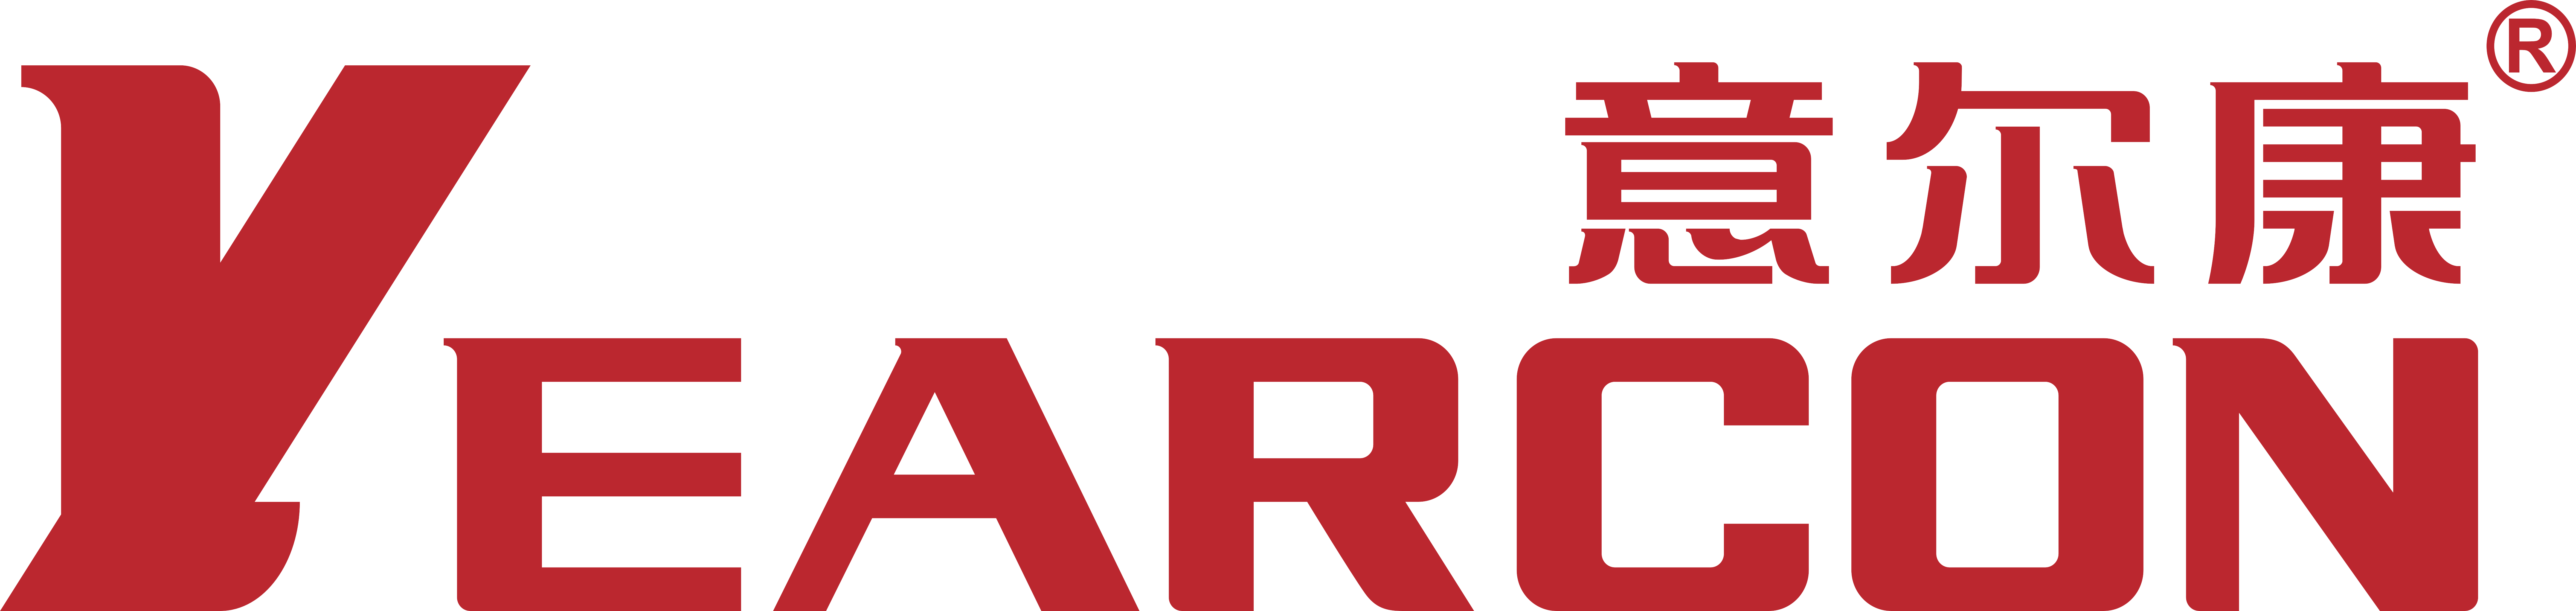 意尔康的标志 logo图片